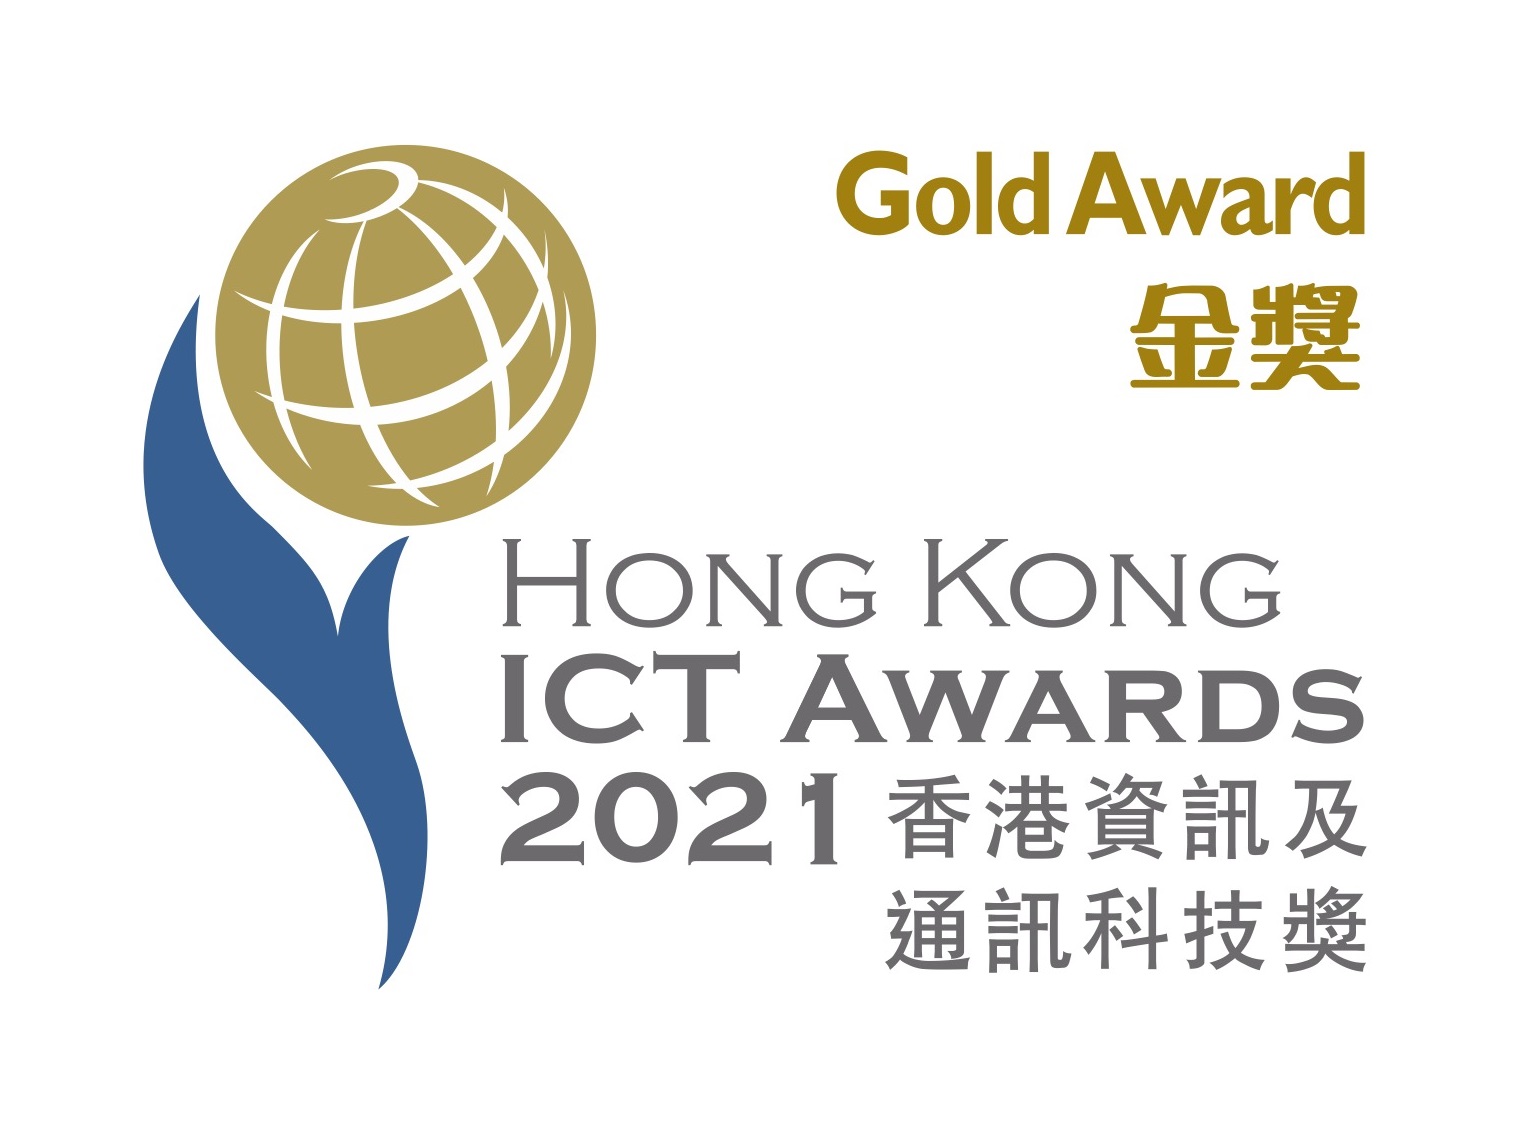 award logo 2021_Gold Award